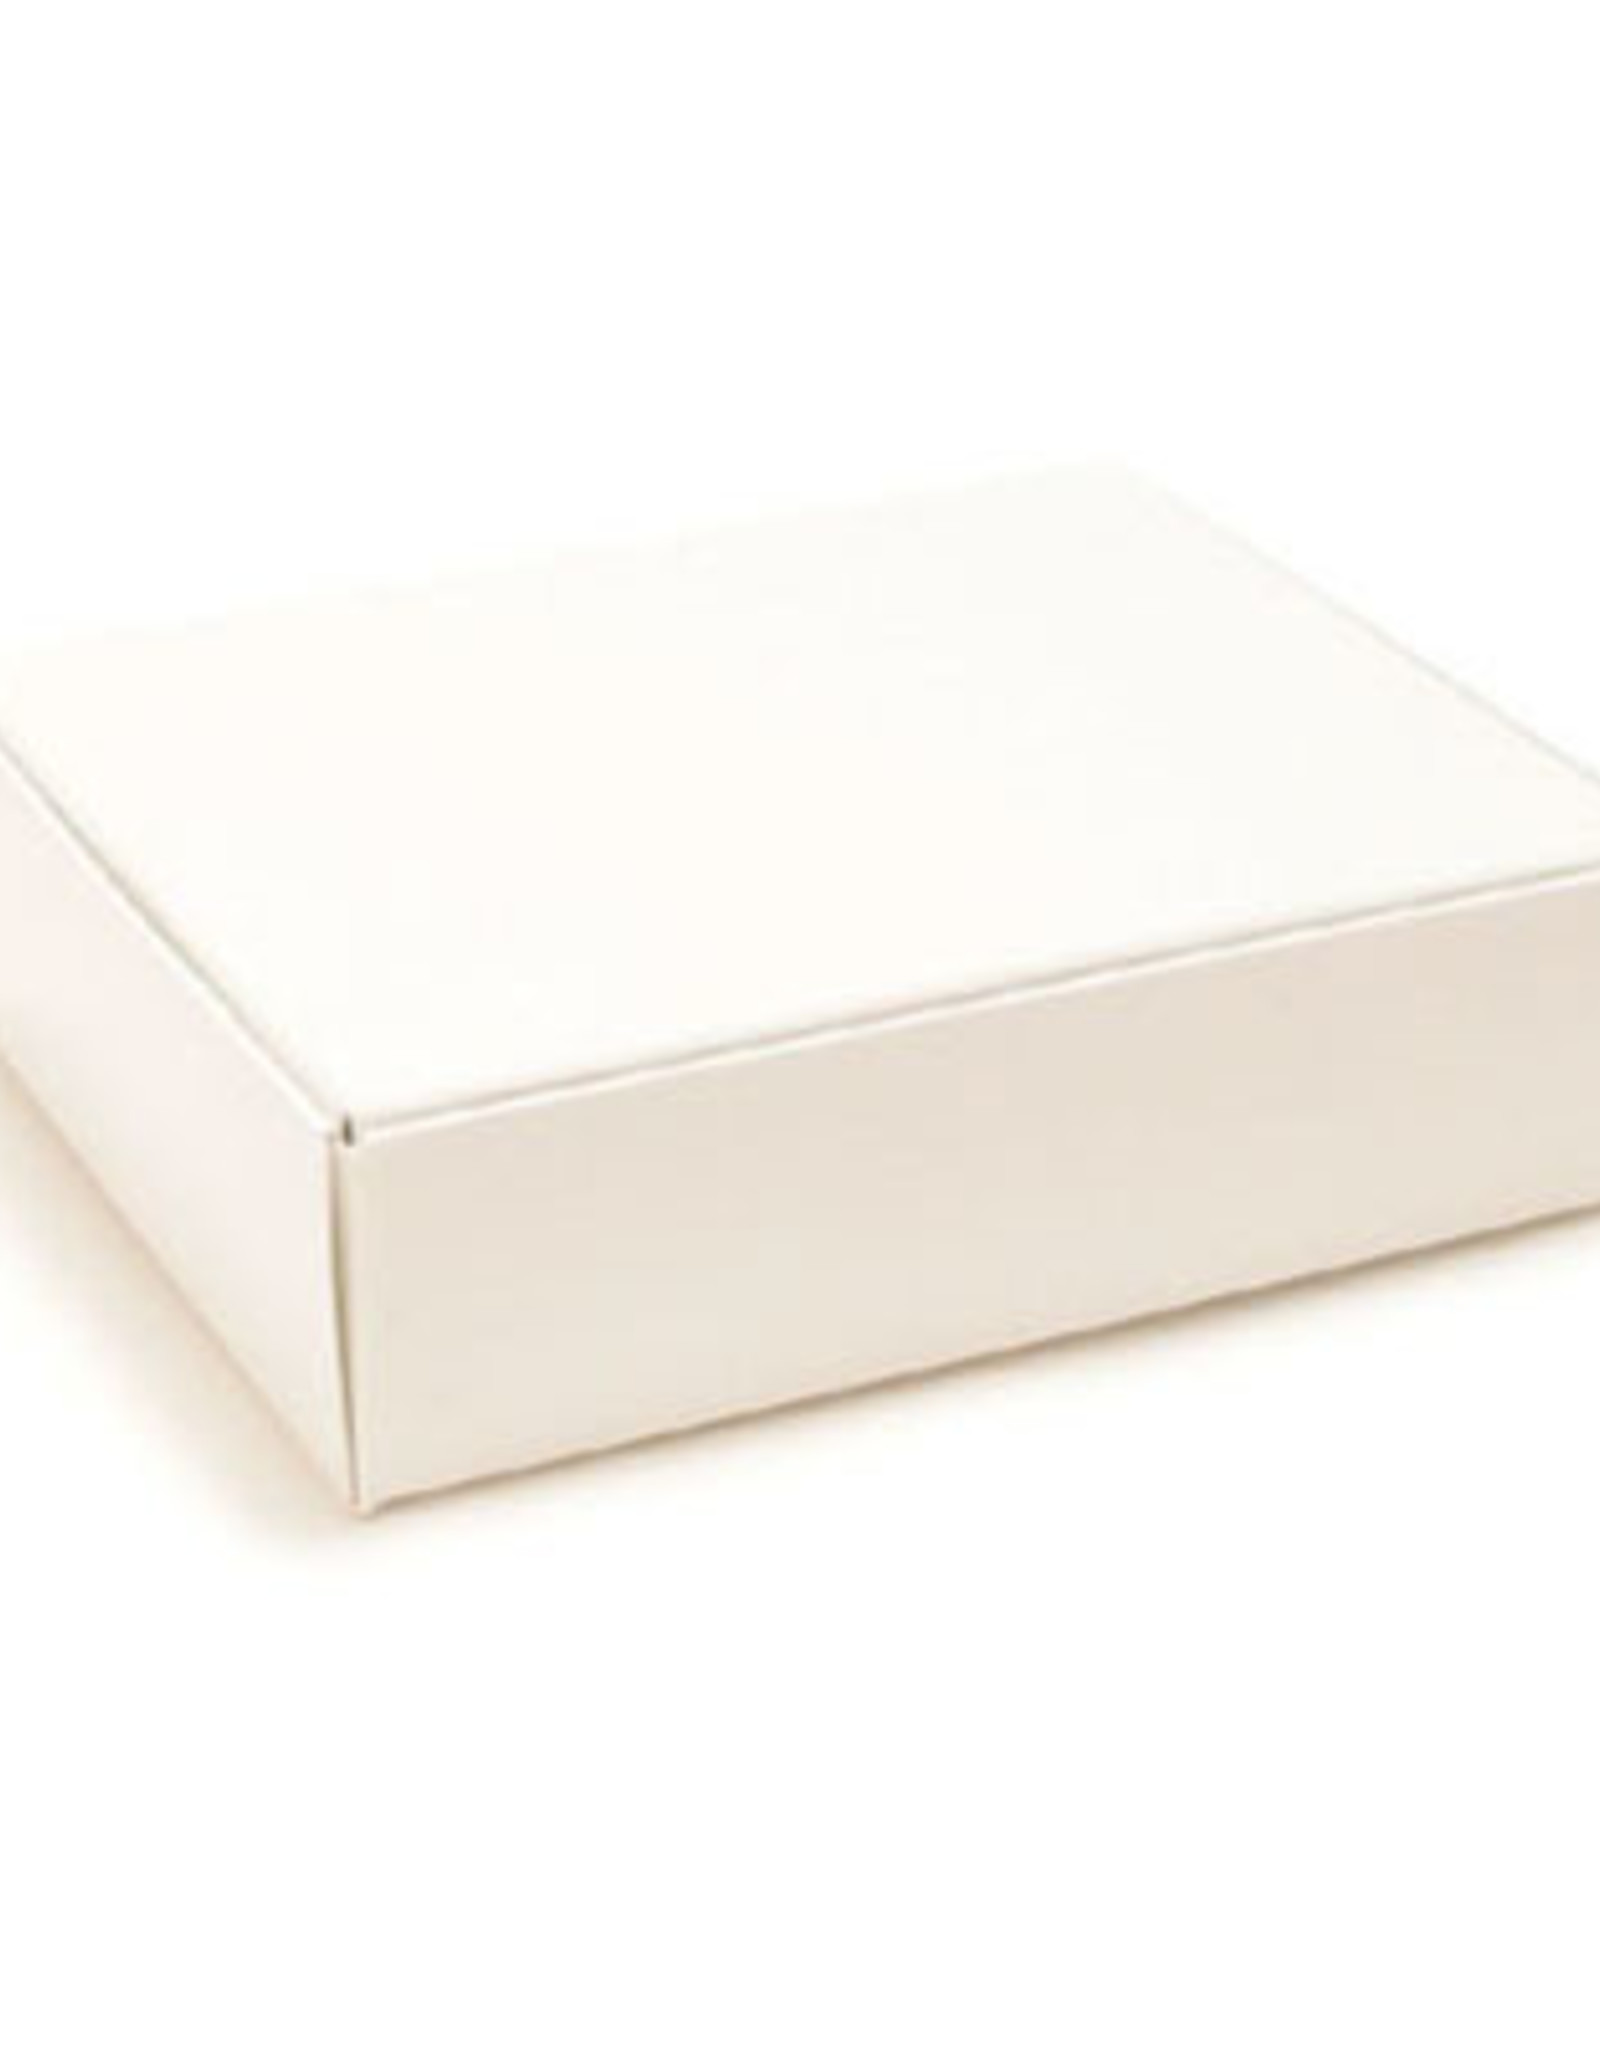 Candy Box (White 1lb.)